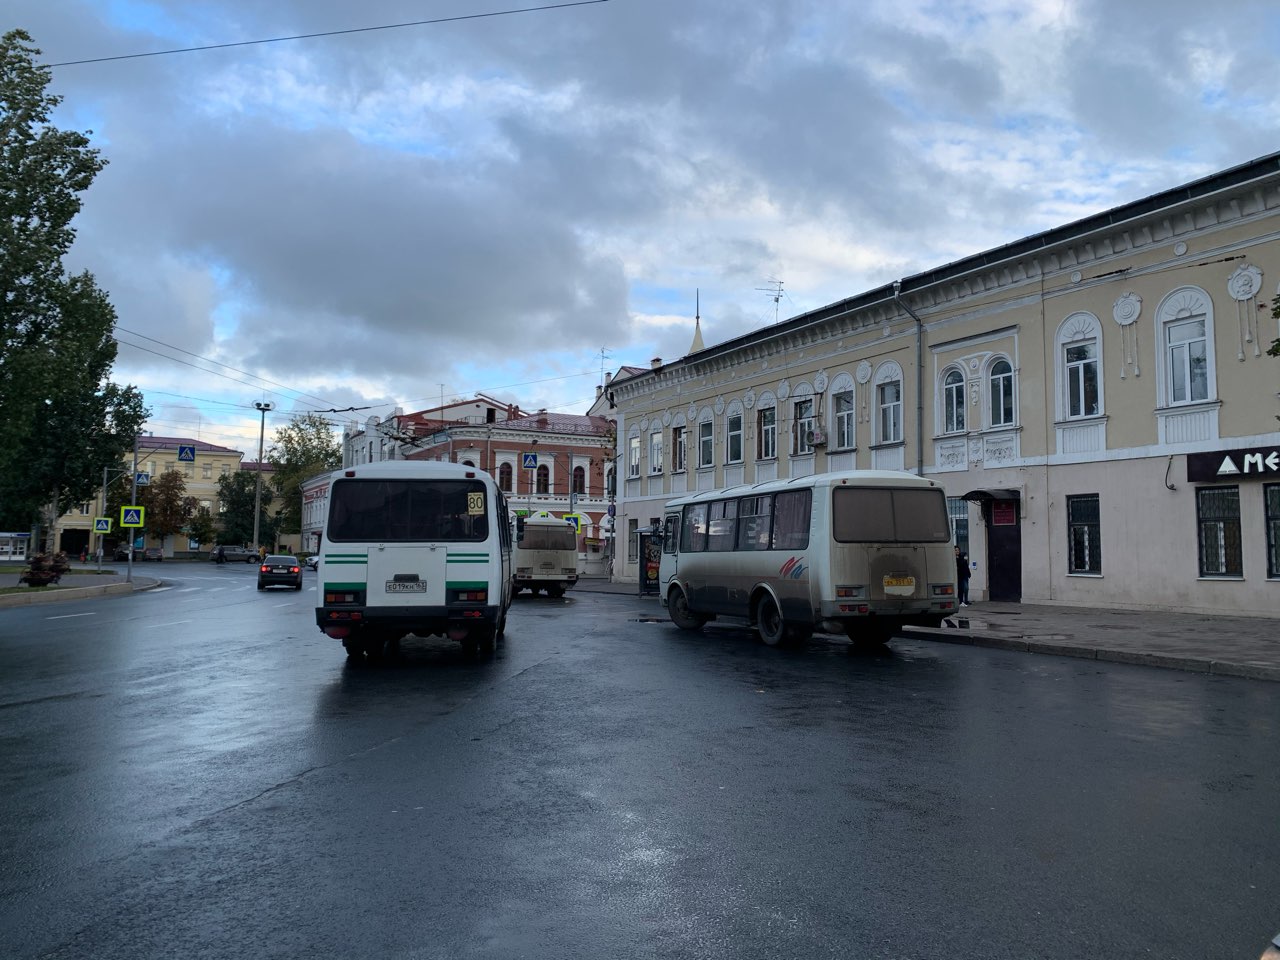 Частные перевозчики увеличили выпуск автобусов на шести маршрутах в Нижнем Новгороде  - фото 1